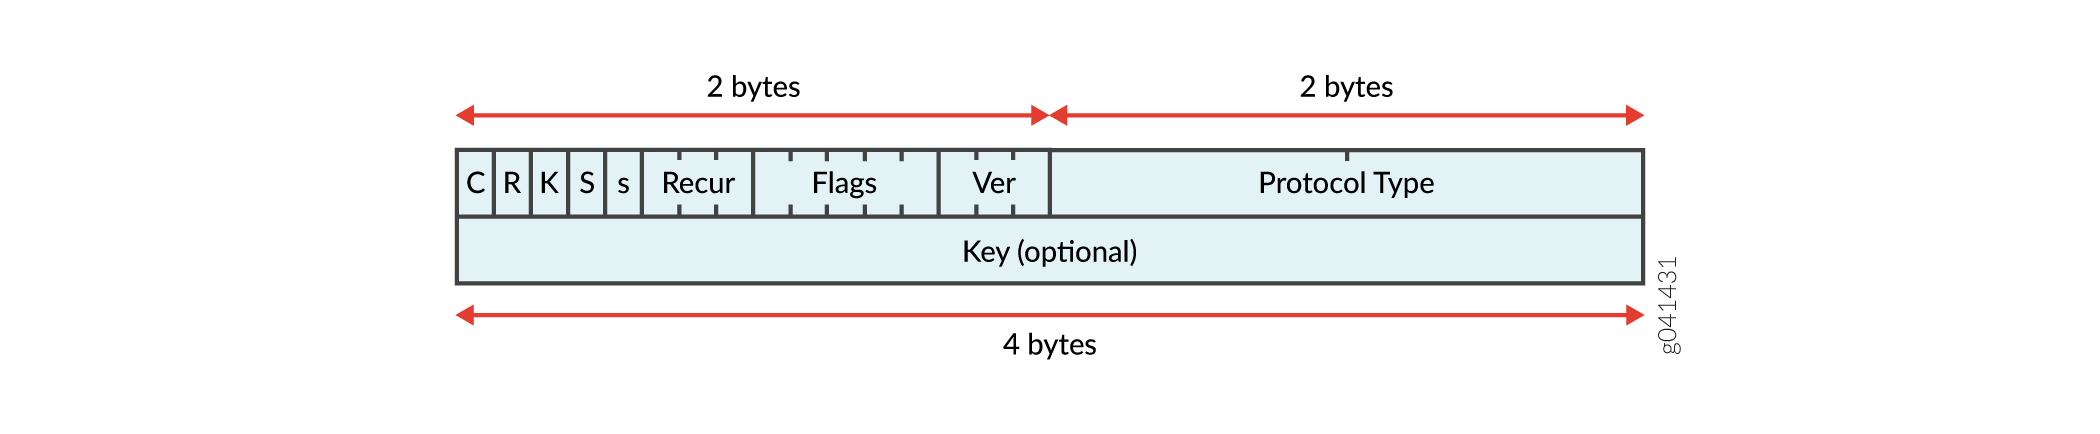 Kapselungsstruktur für filterbasiertes Tunneling in einem IPv4-Netzwerk